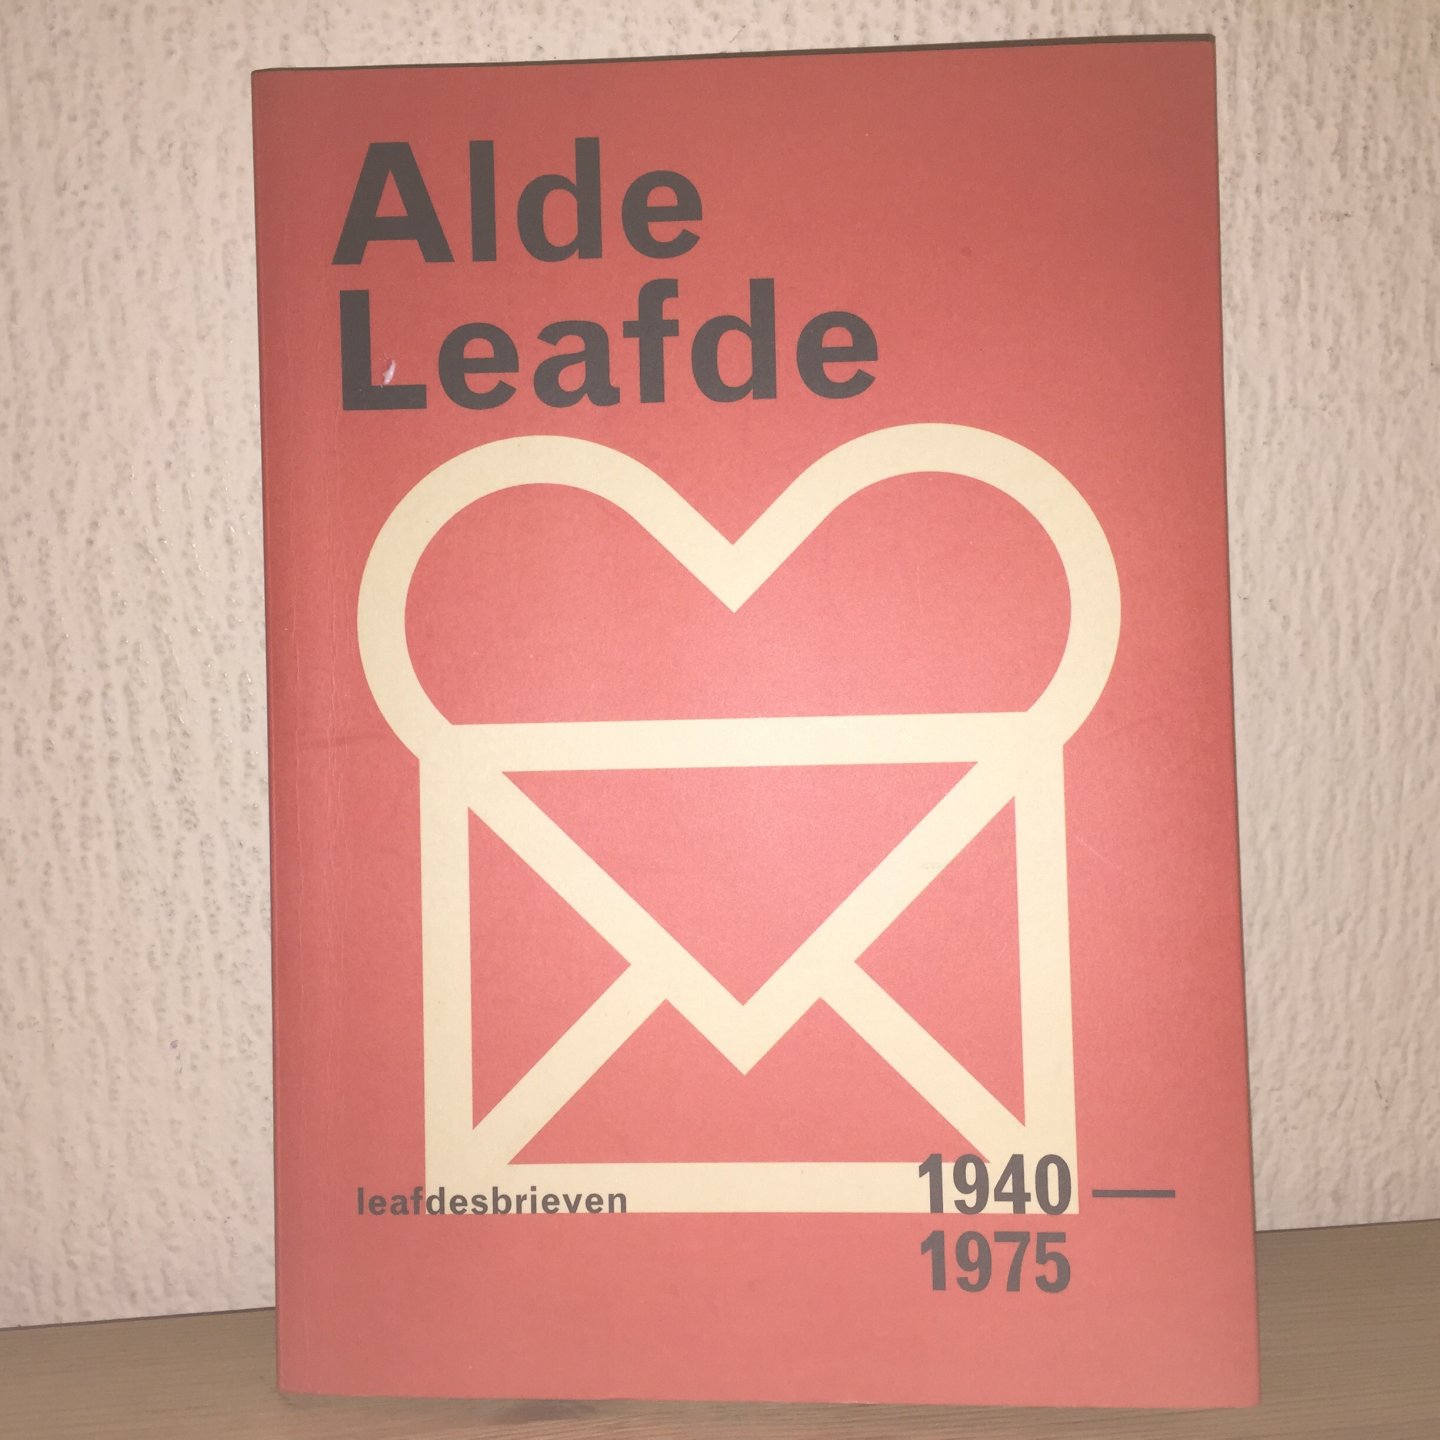 Wytsma, Baukje, Kuiper, Lineke - Alde leafde / leafdesbrieven 1940-1975